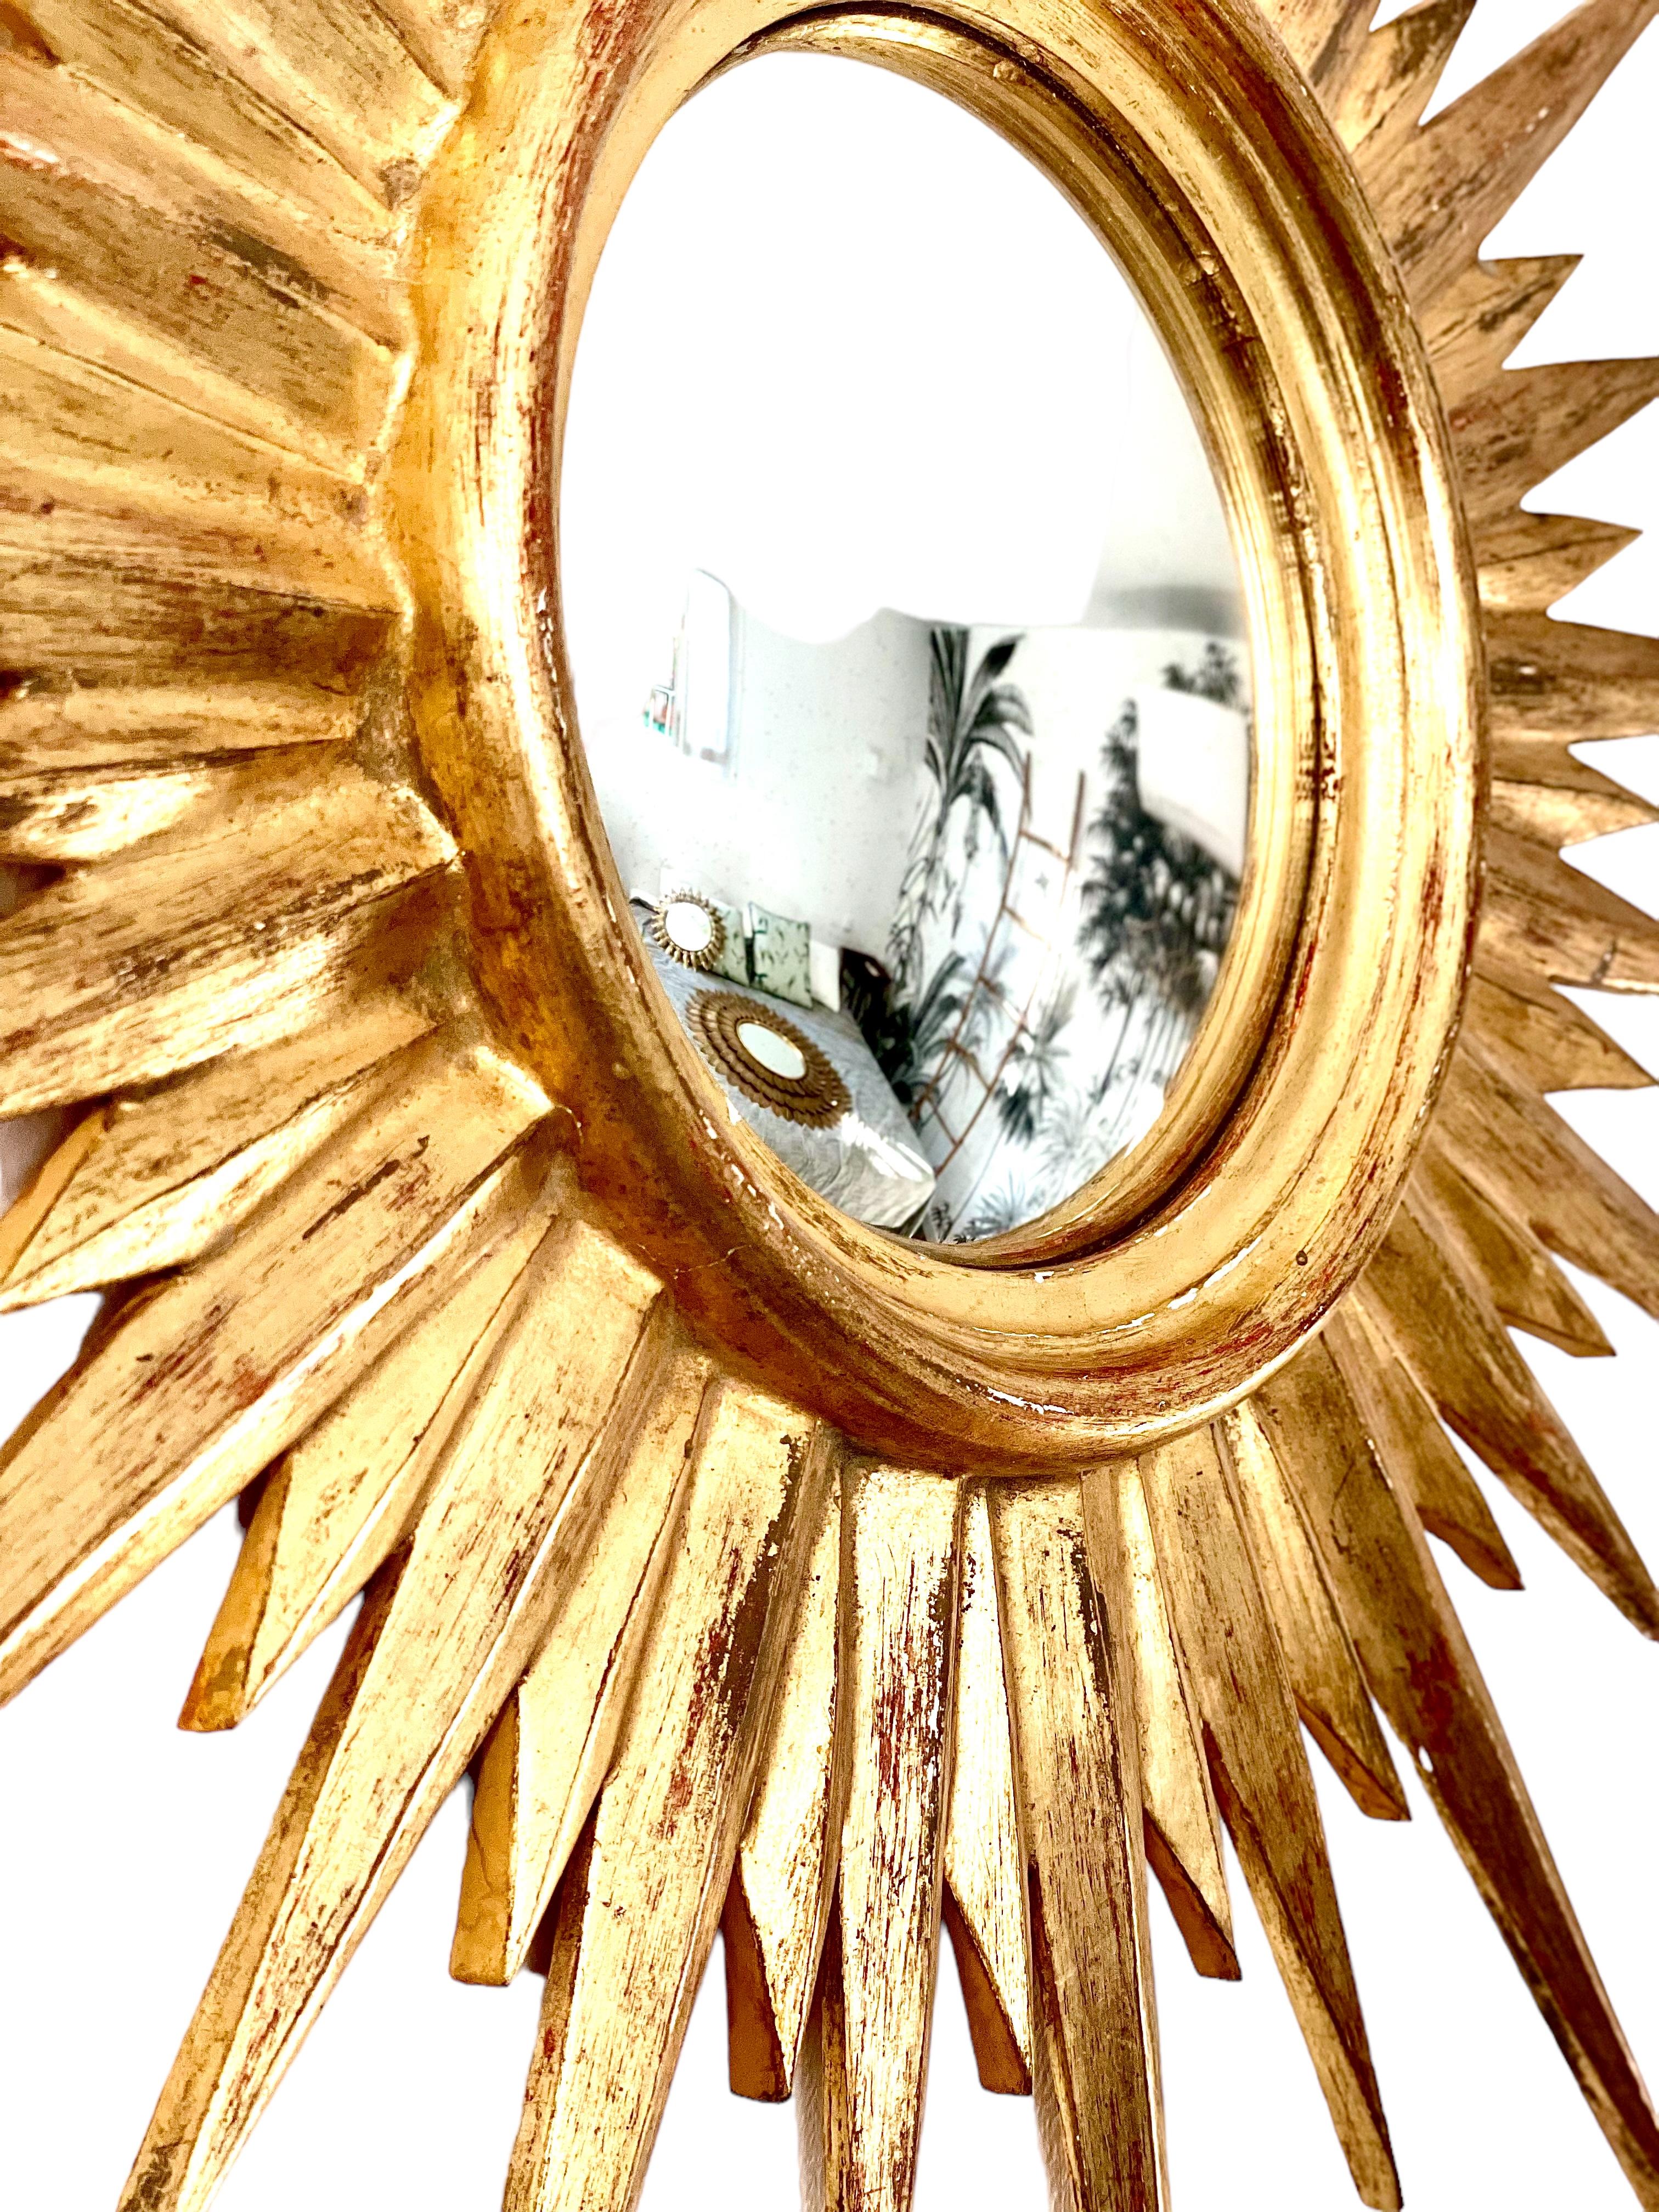 Un large et exquis miroir convexe français en stuc doré. 
En très bon état.
